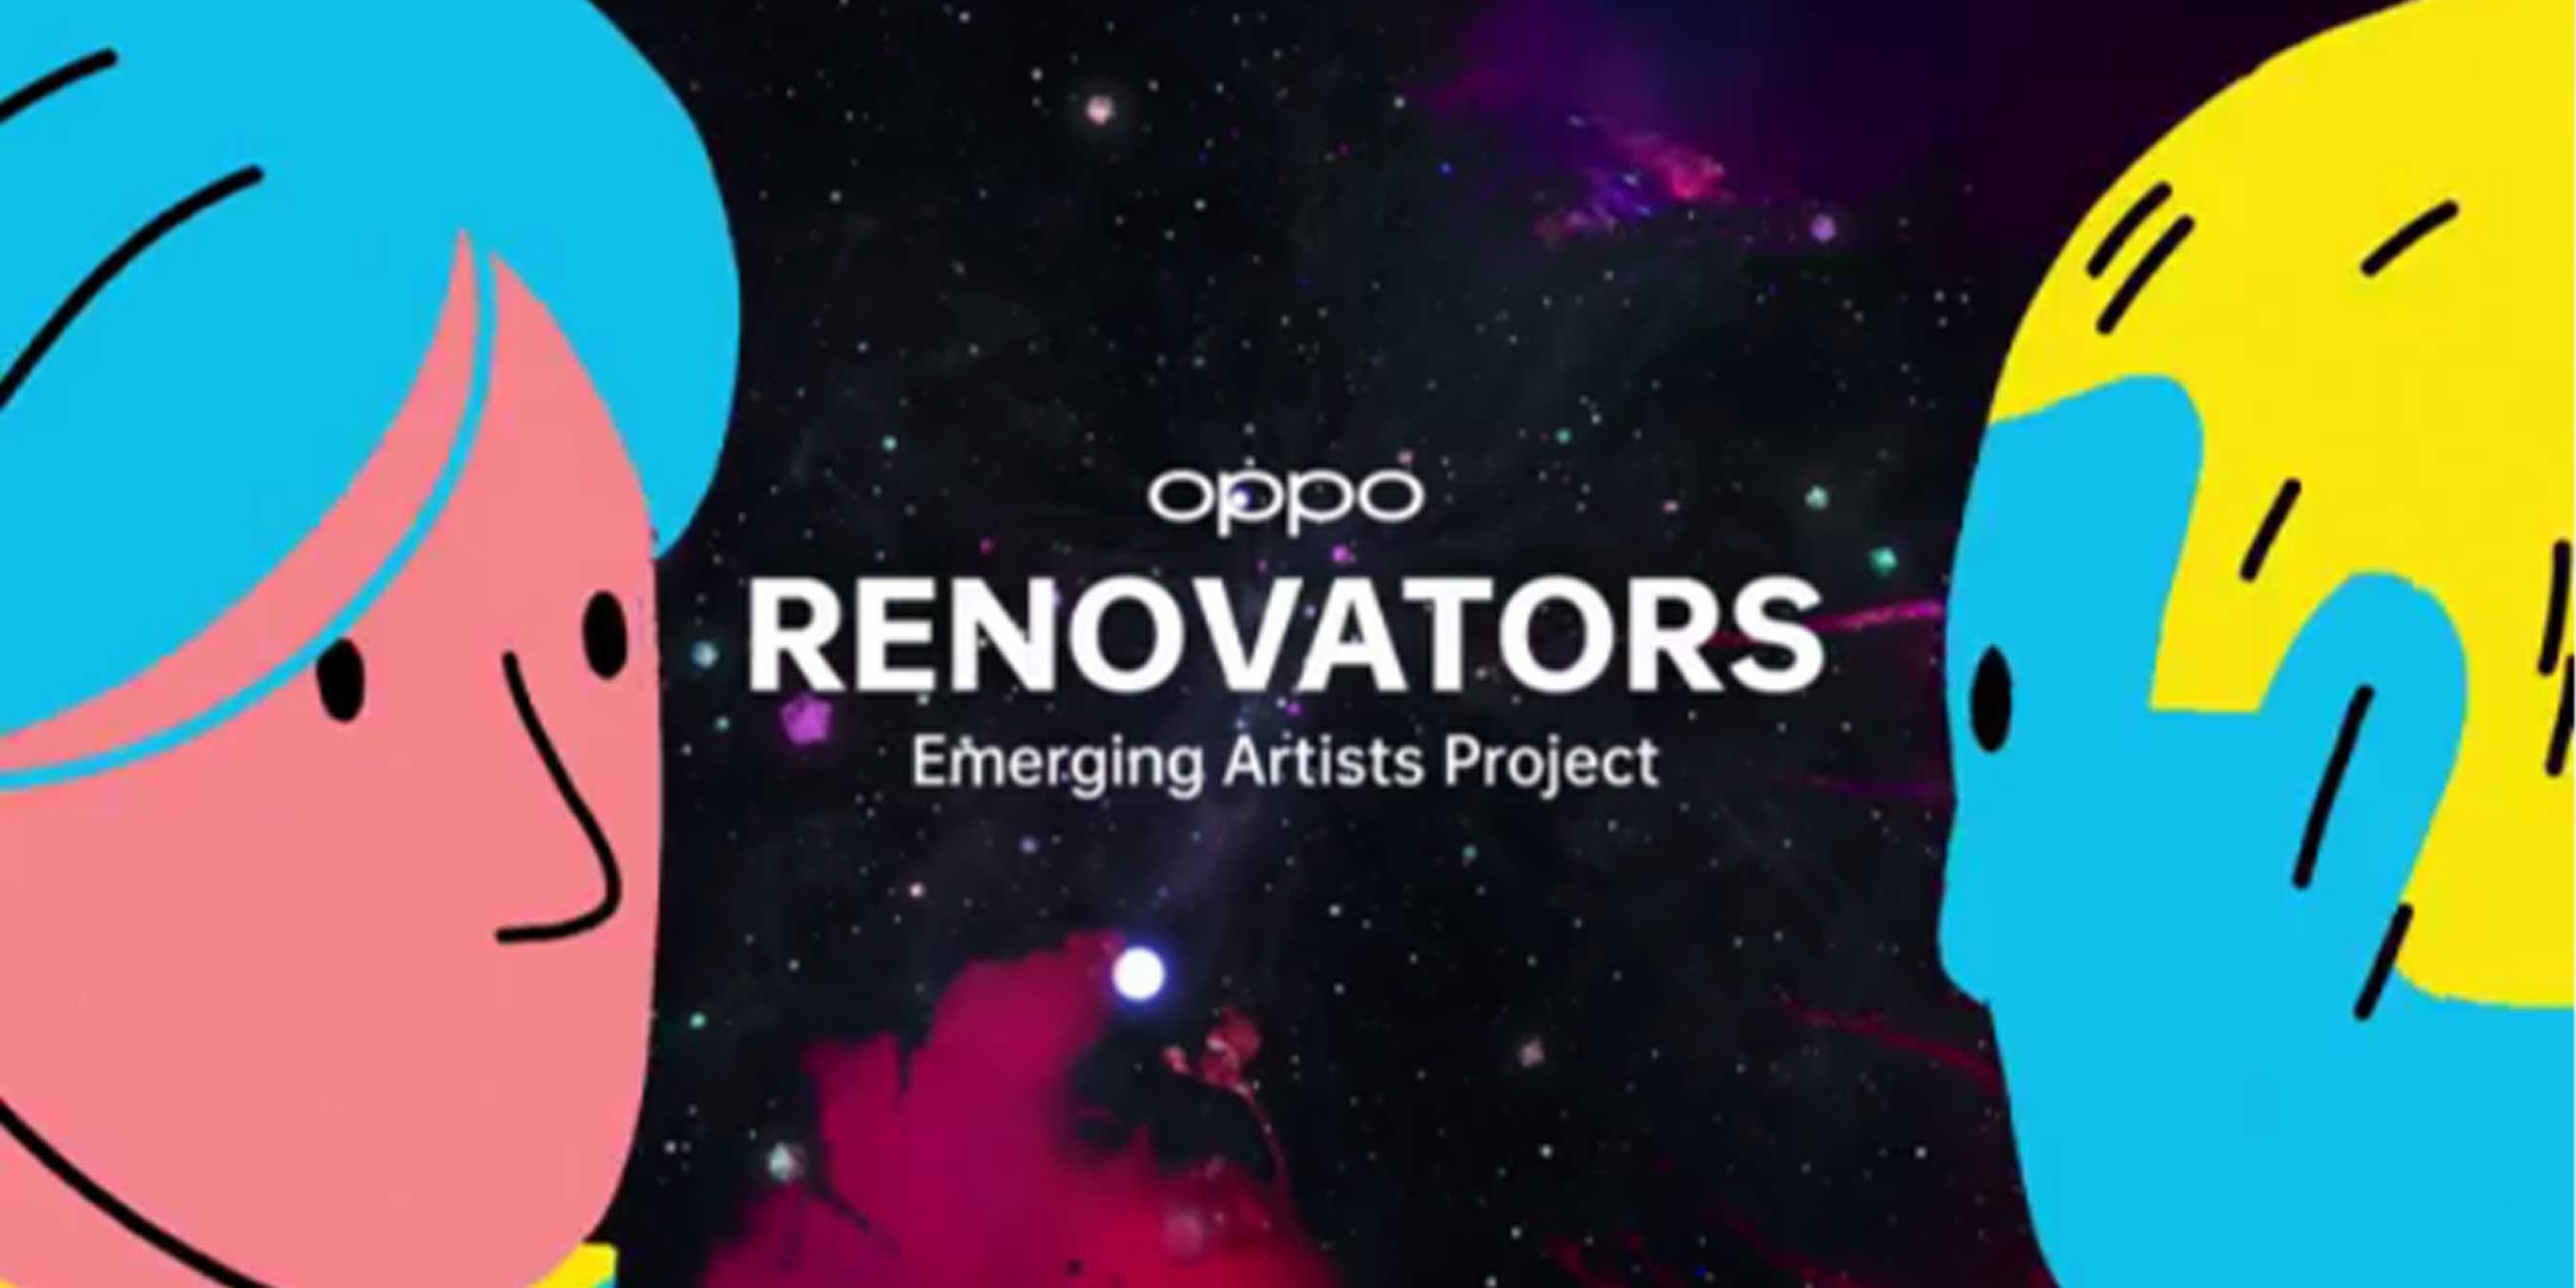 OPPO Renovators invites young artists to ignite the future.